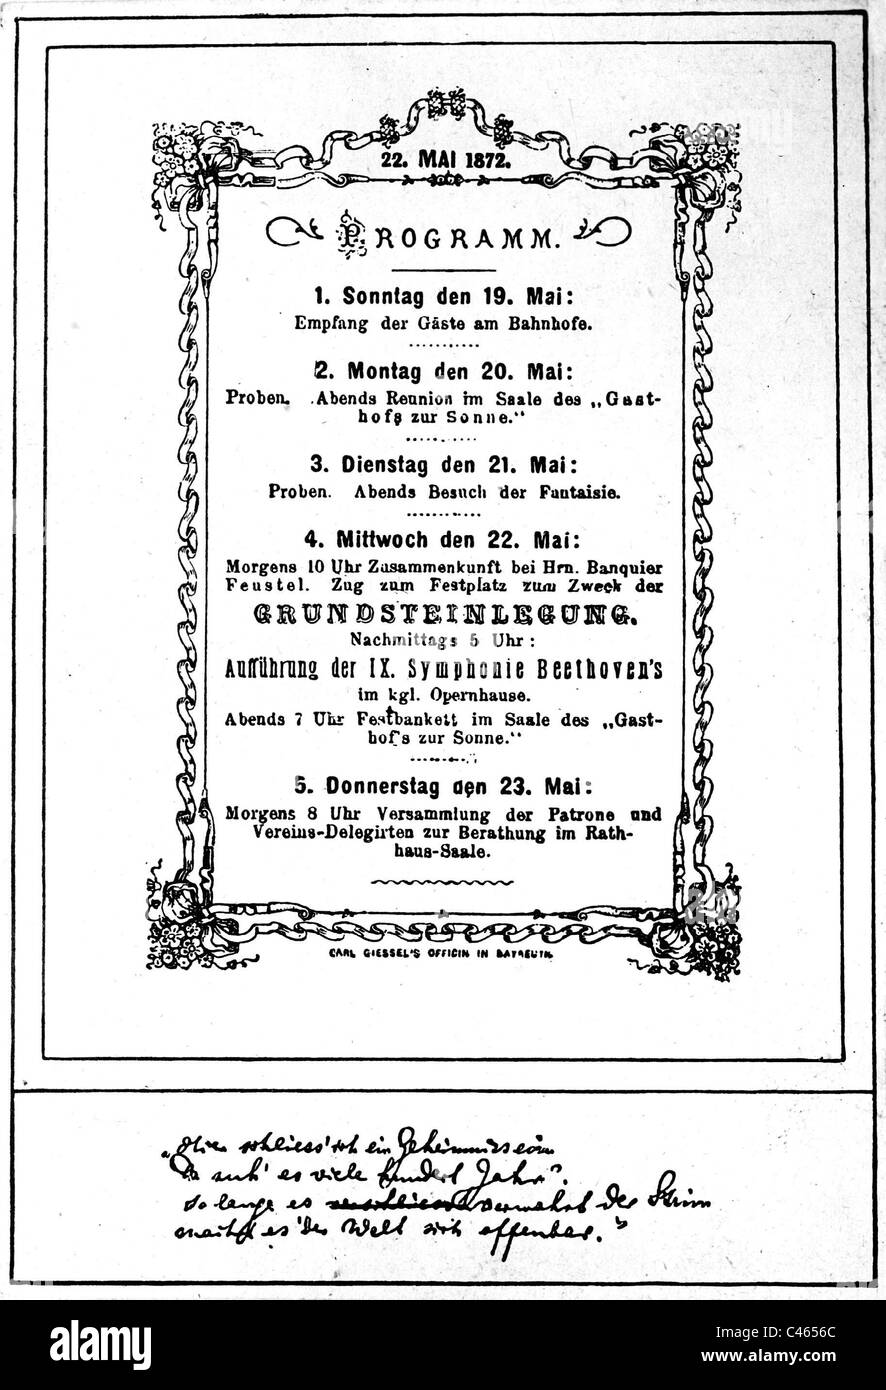 Programm für die Grundsteinlegung des Bayreuther Festspielhauses, 1872 Stockfoto